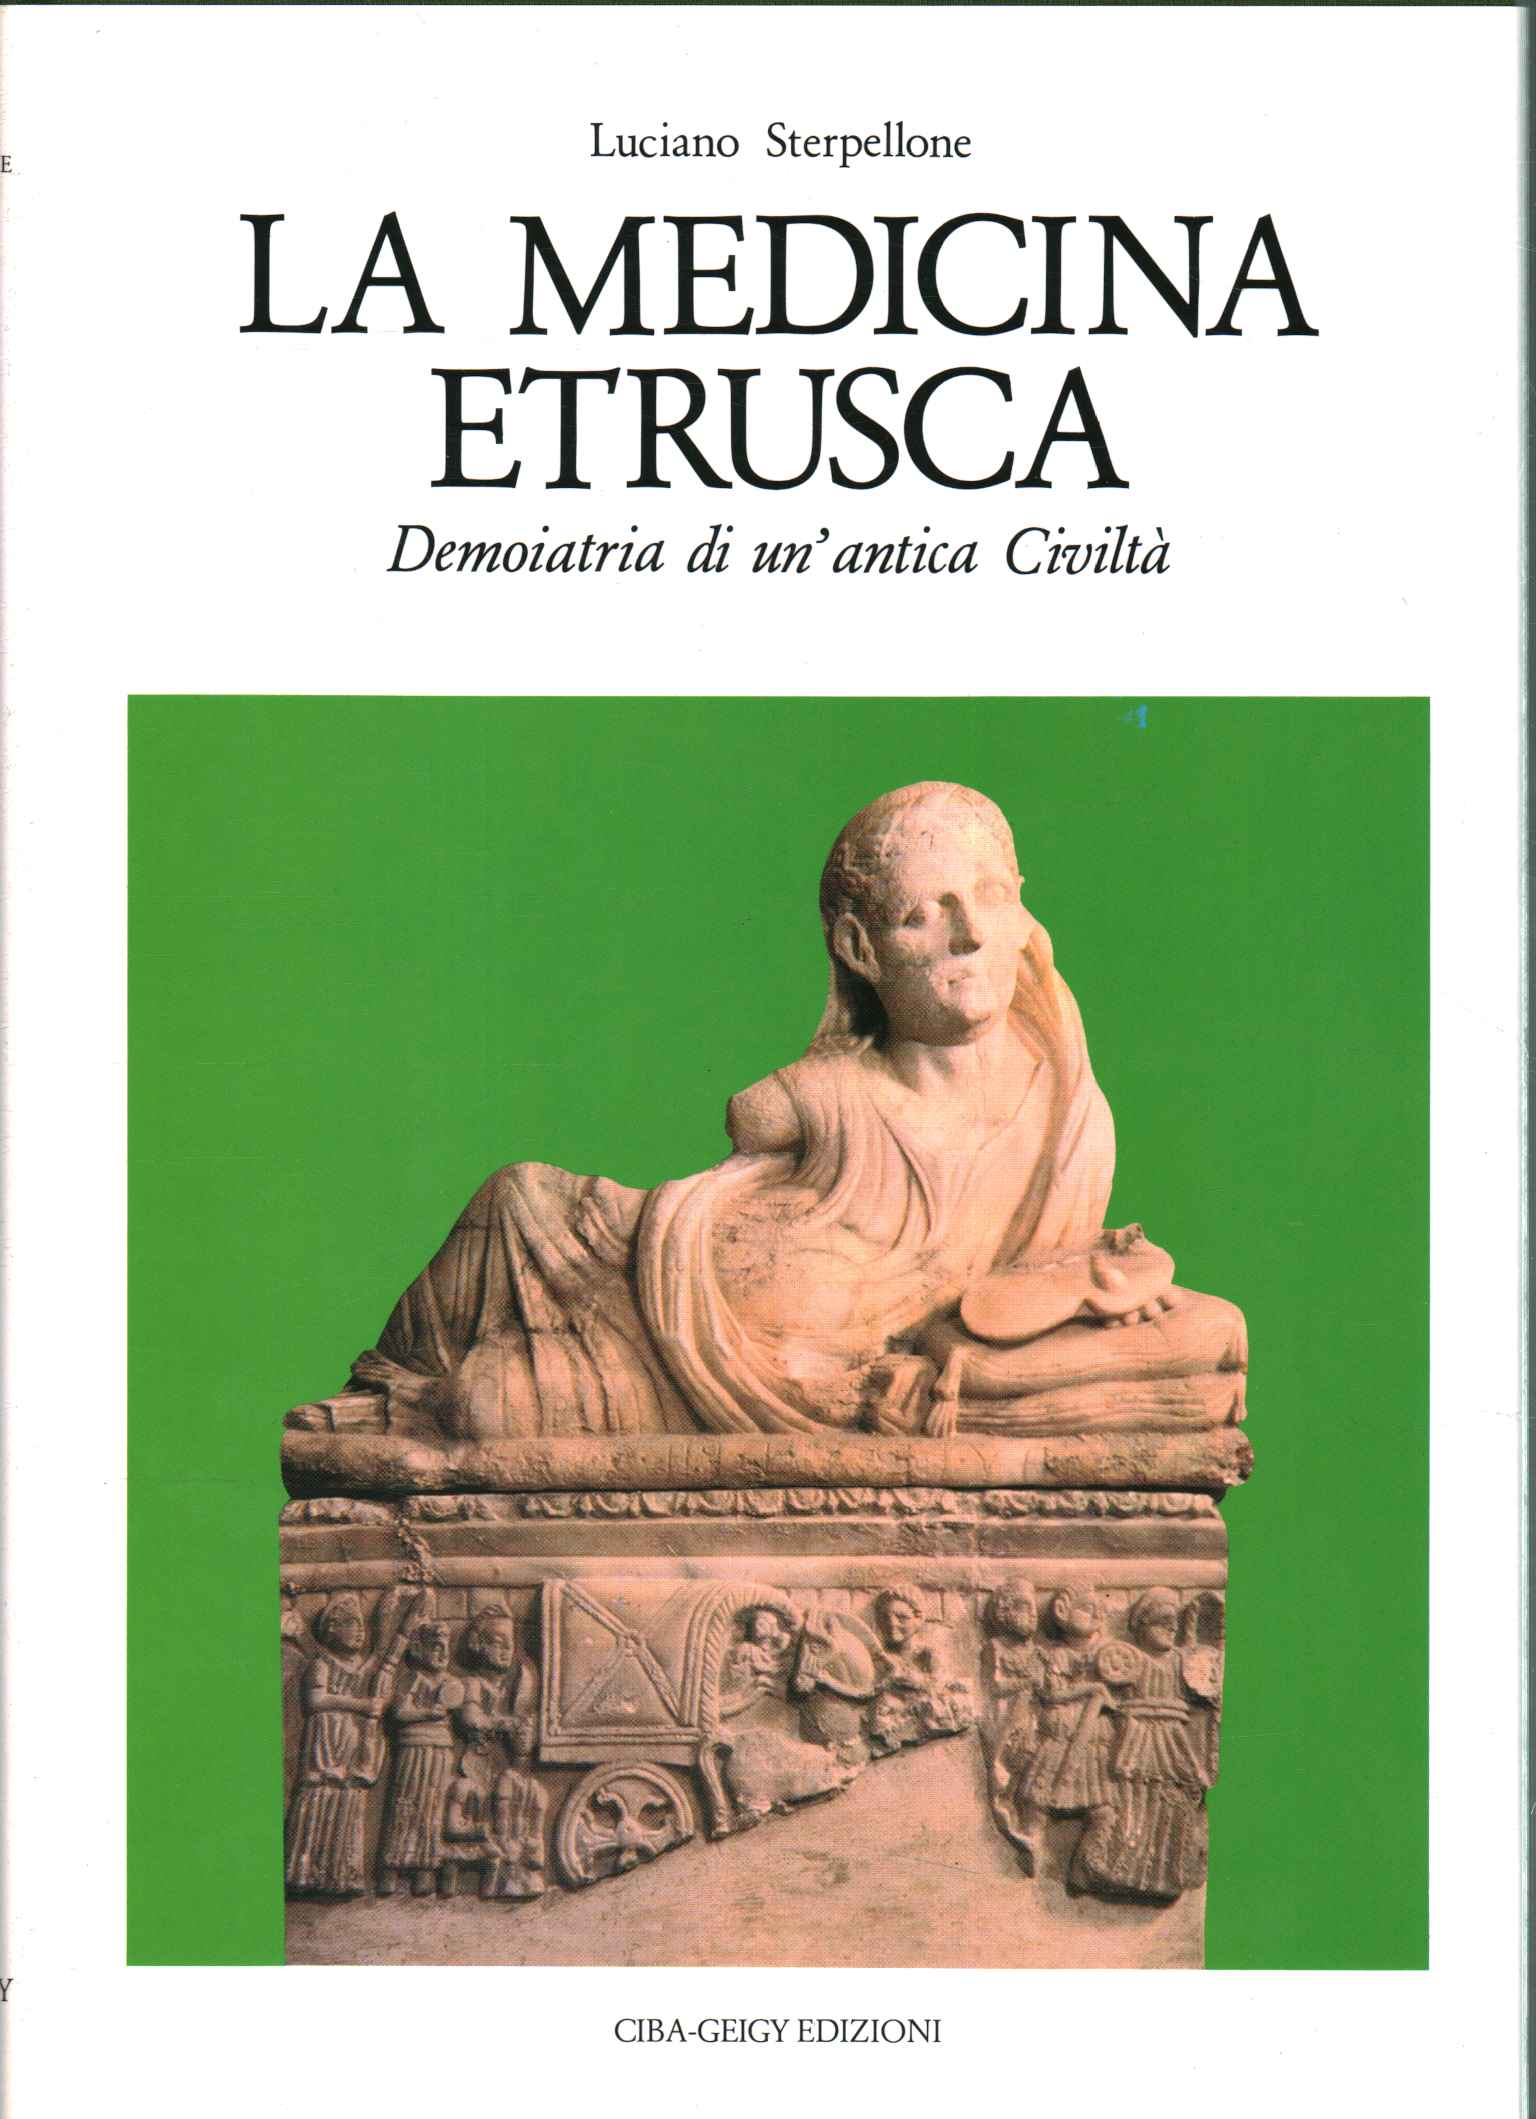 Etruscan medicine